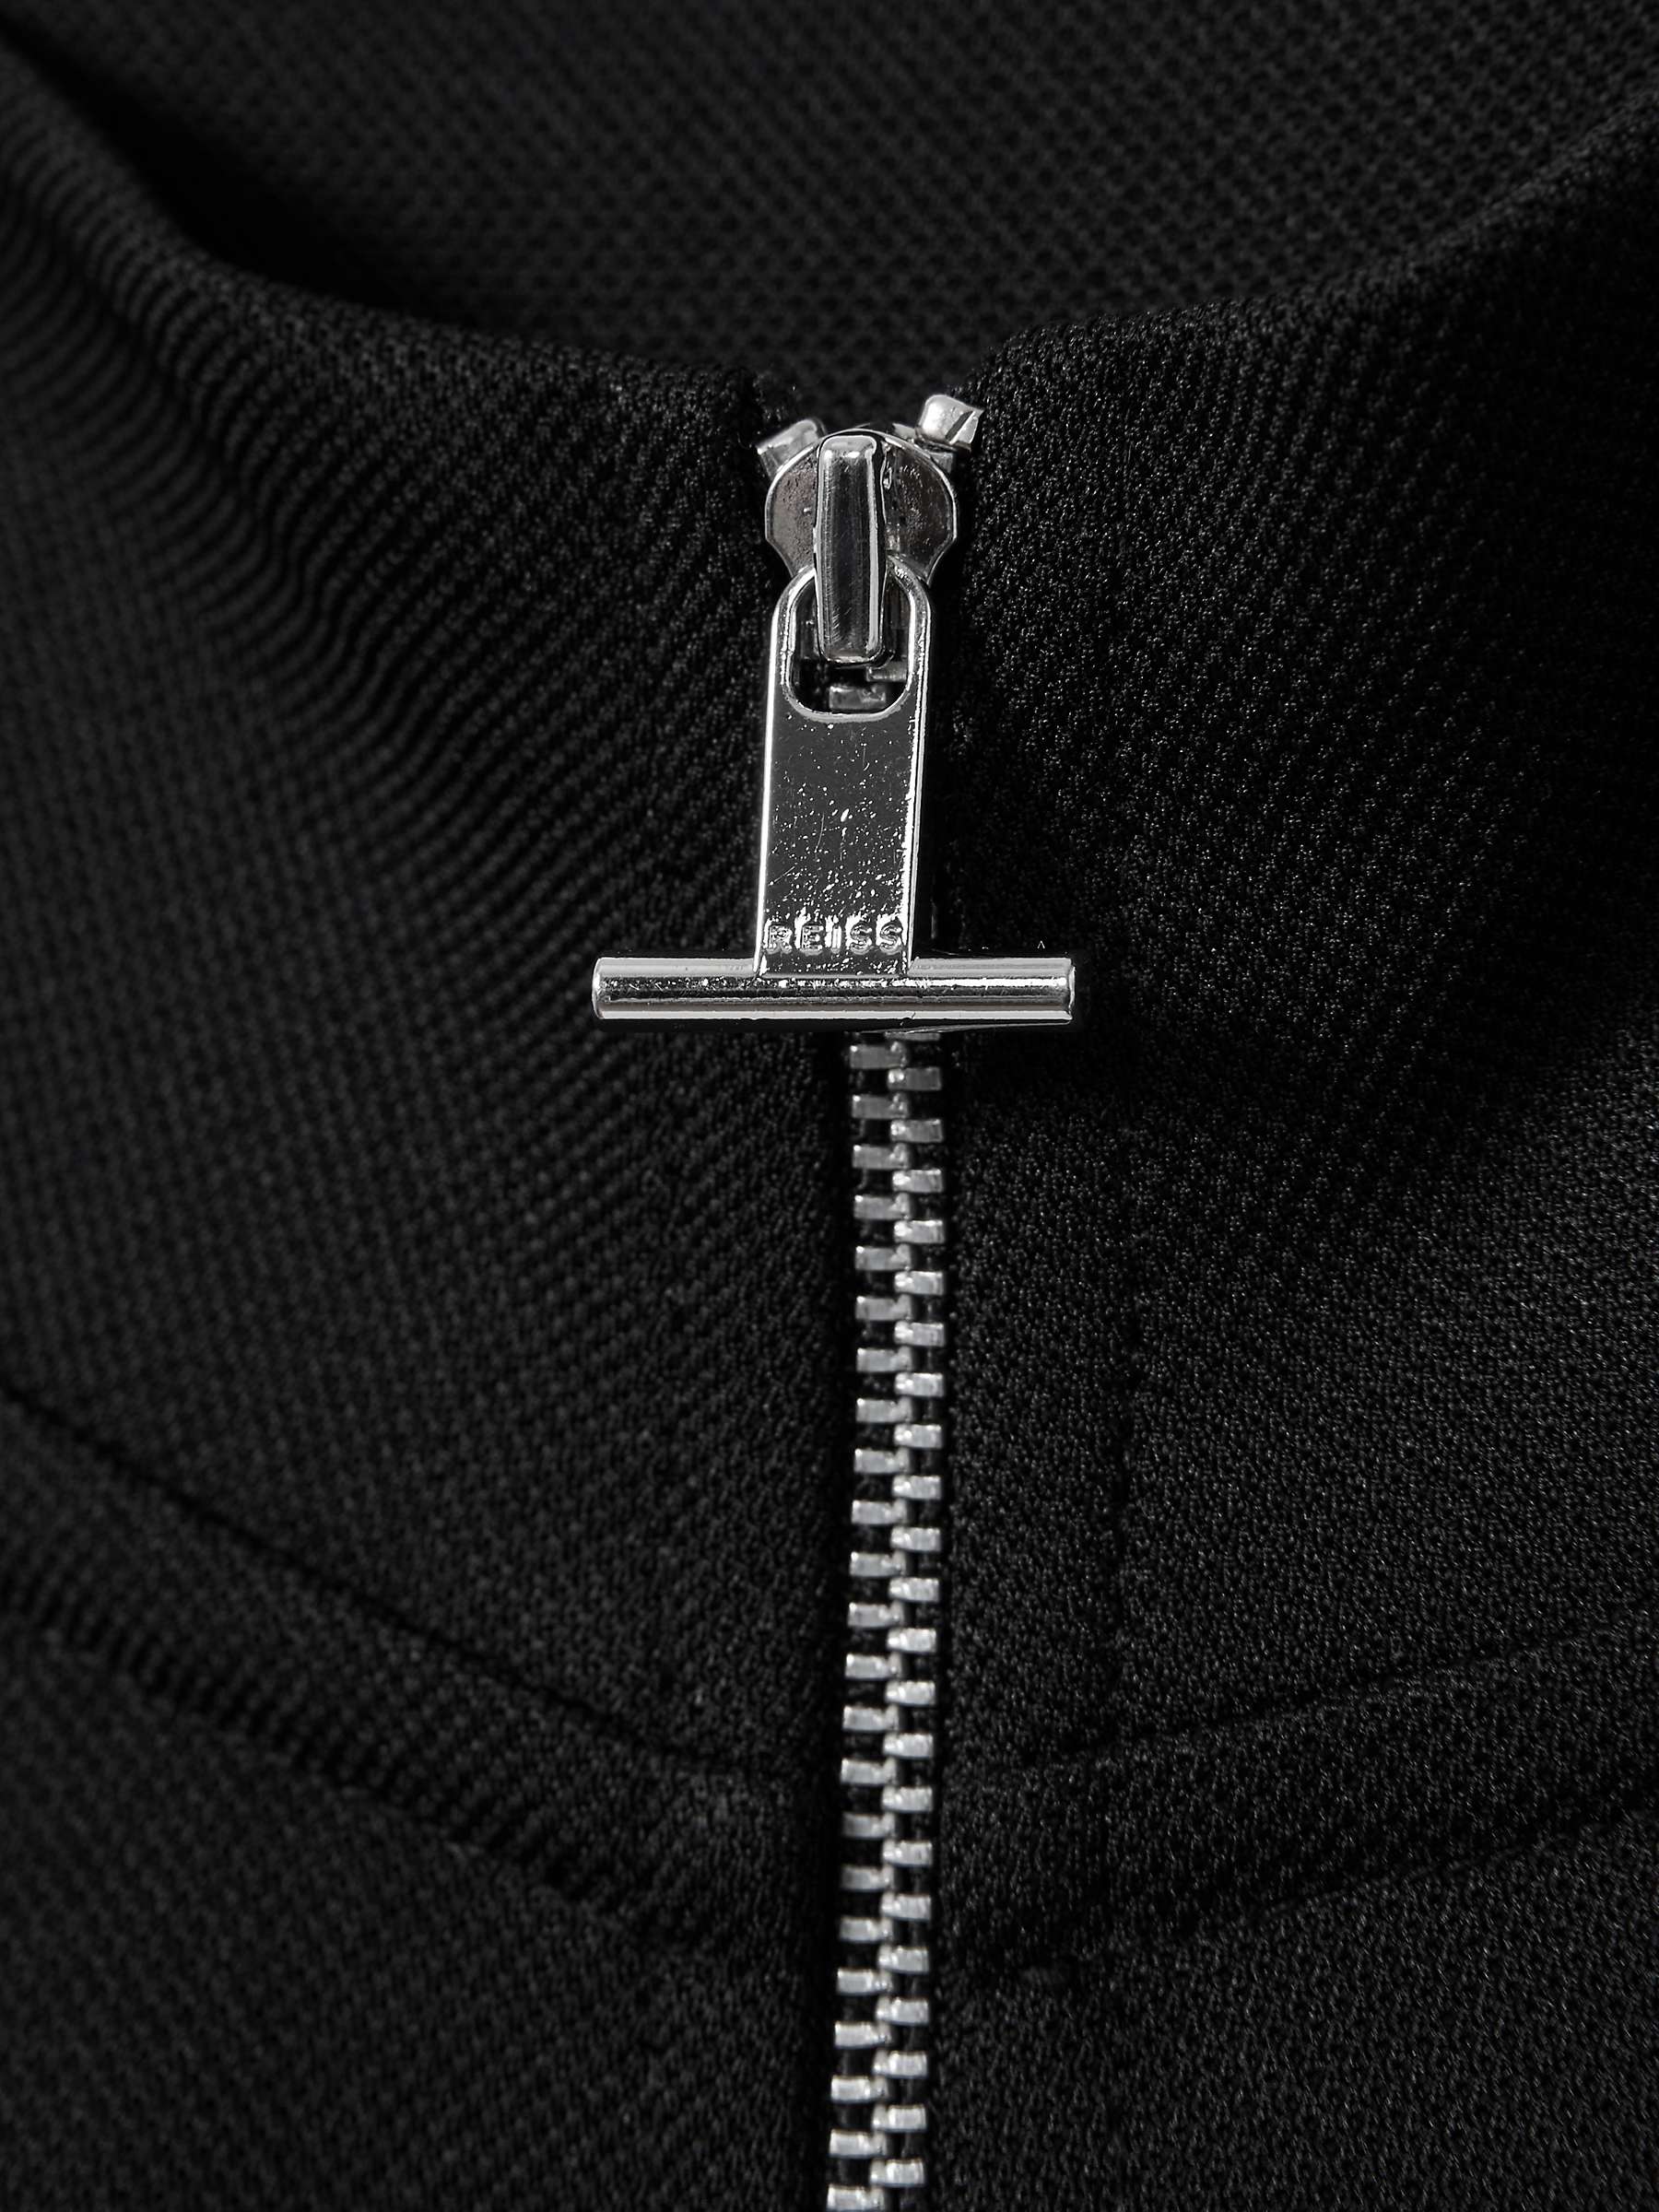 Buy Reiss Barret Textured Half Zip Sweatshirt, Black Online at johnlewis.com